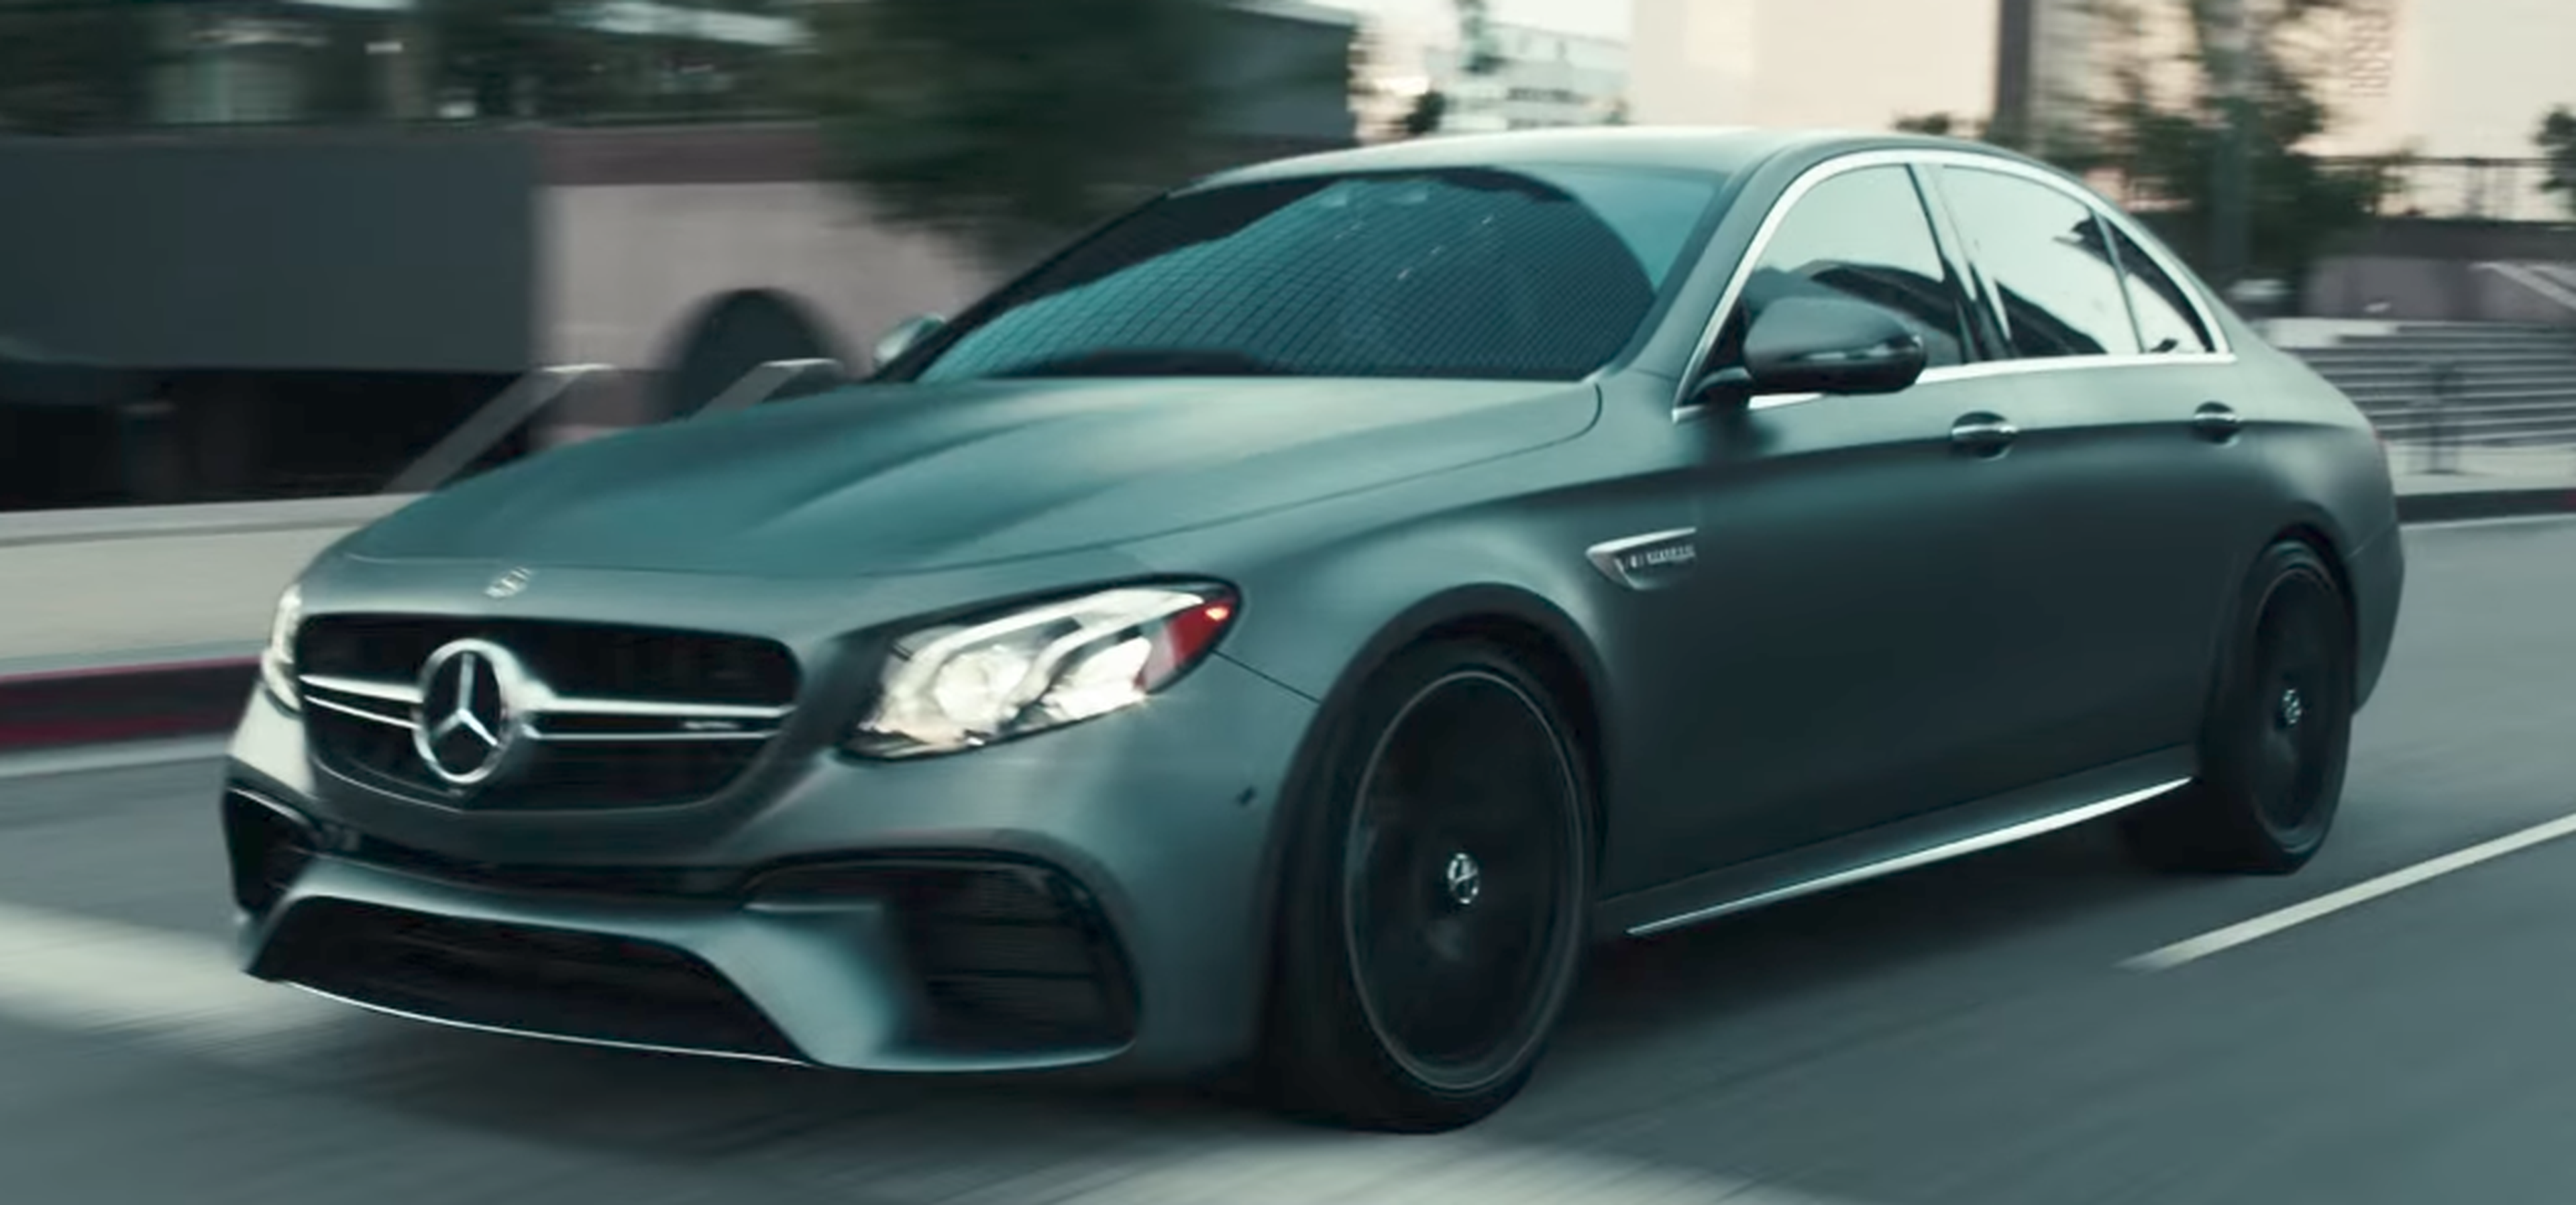 VÍDEO: ¡El Mercedes AMG E63 S acelera más que un Fórmula! [TG]